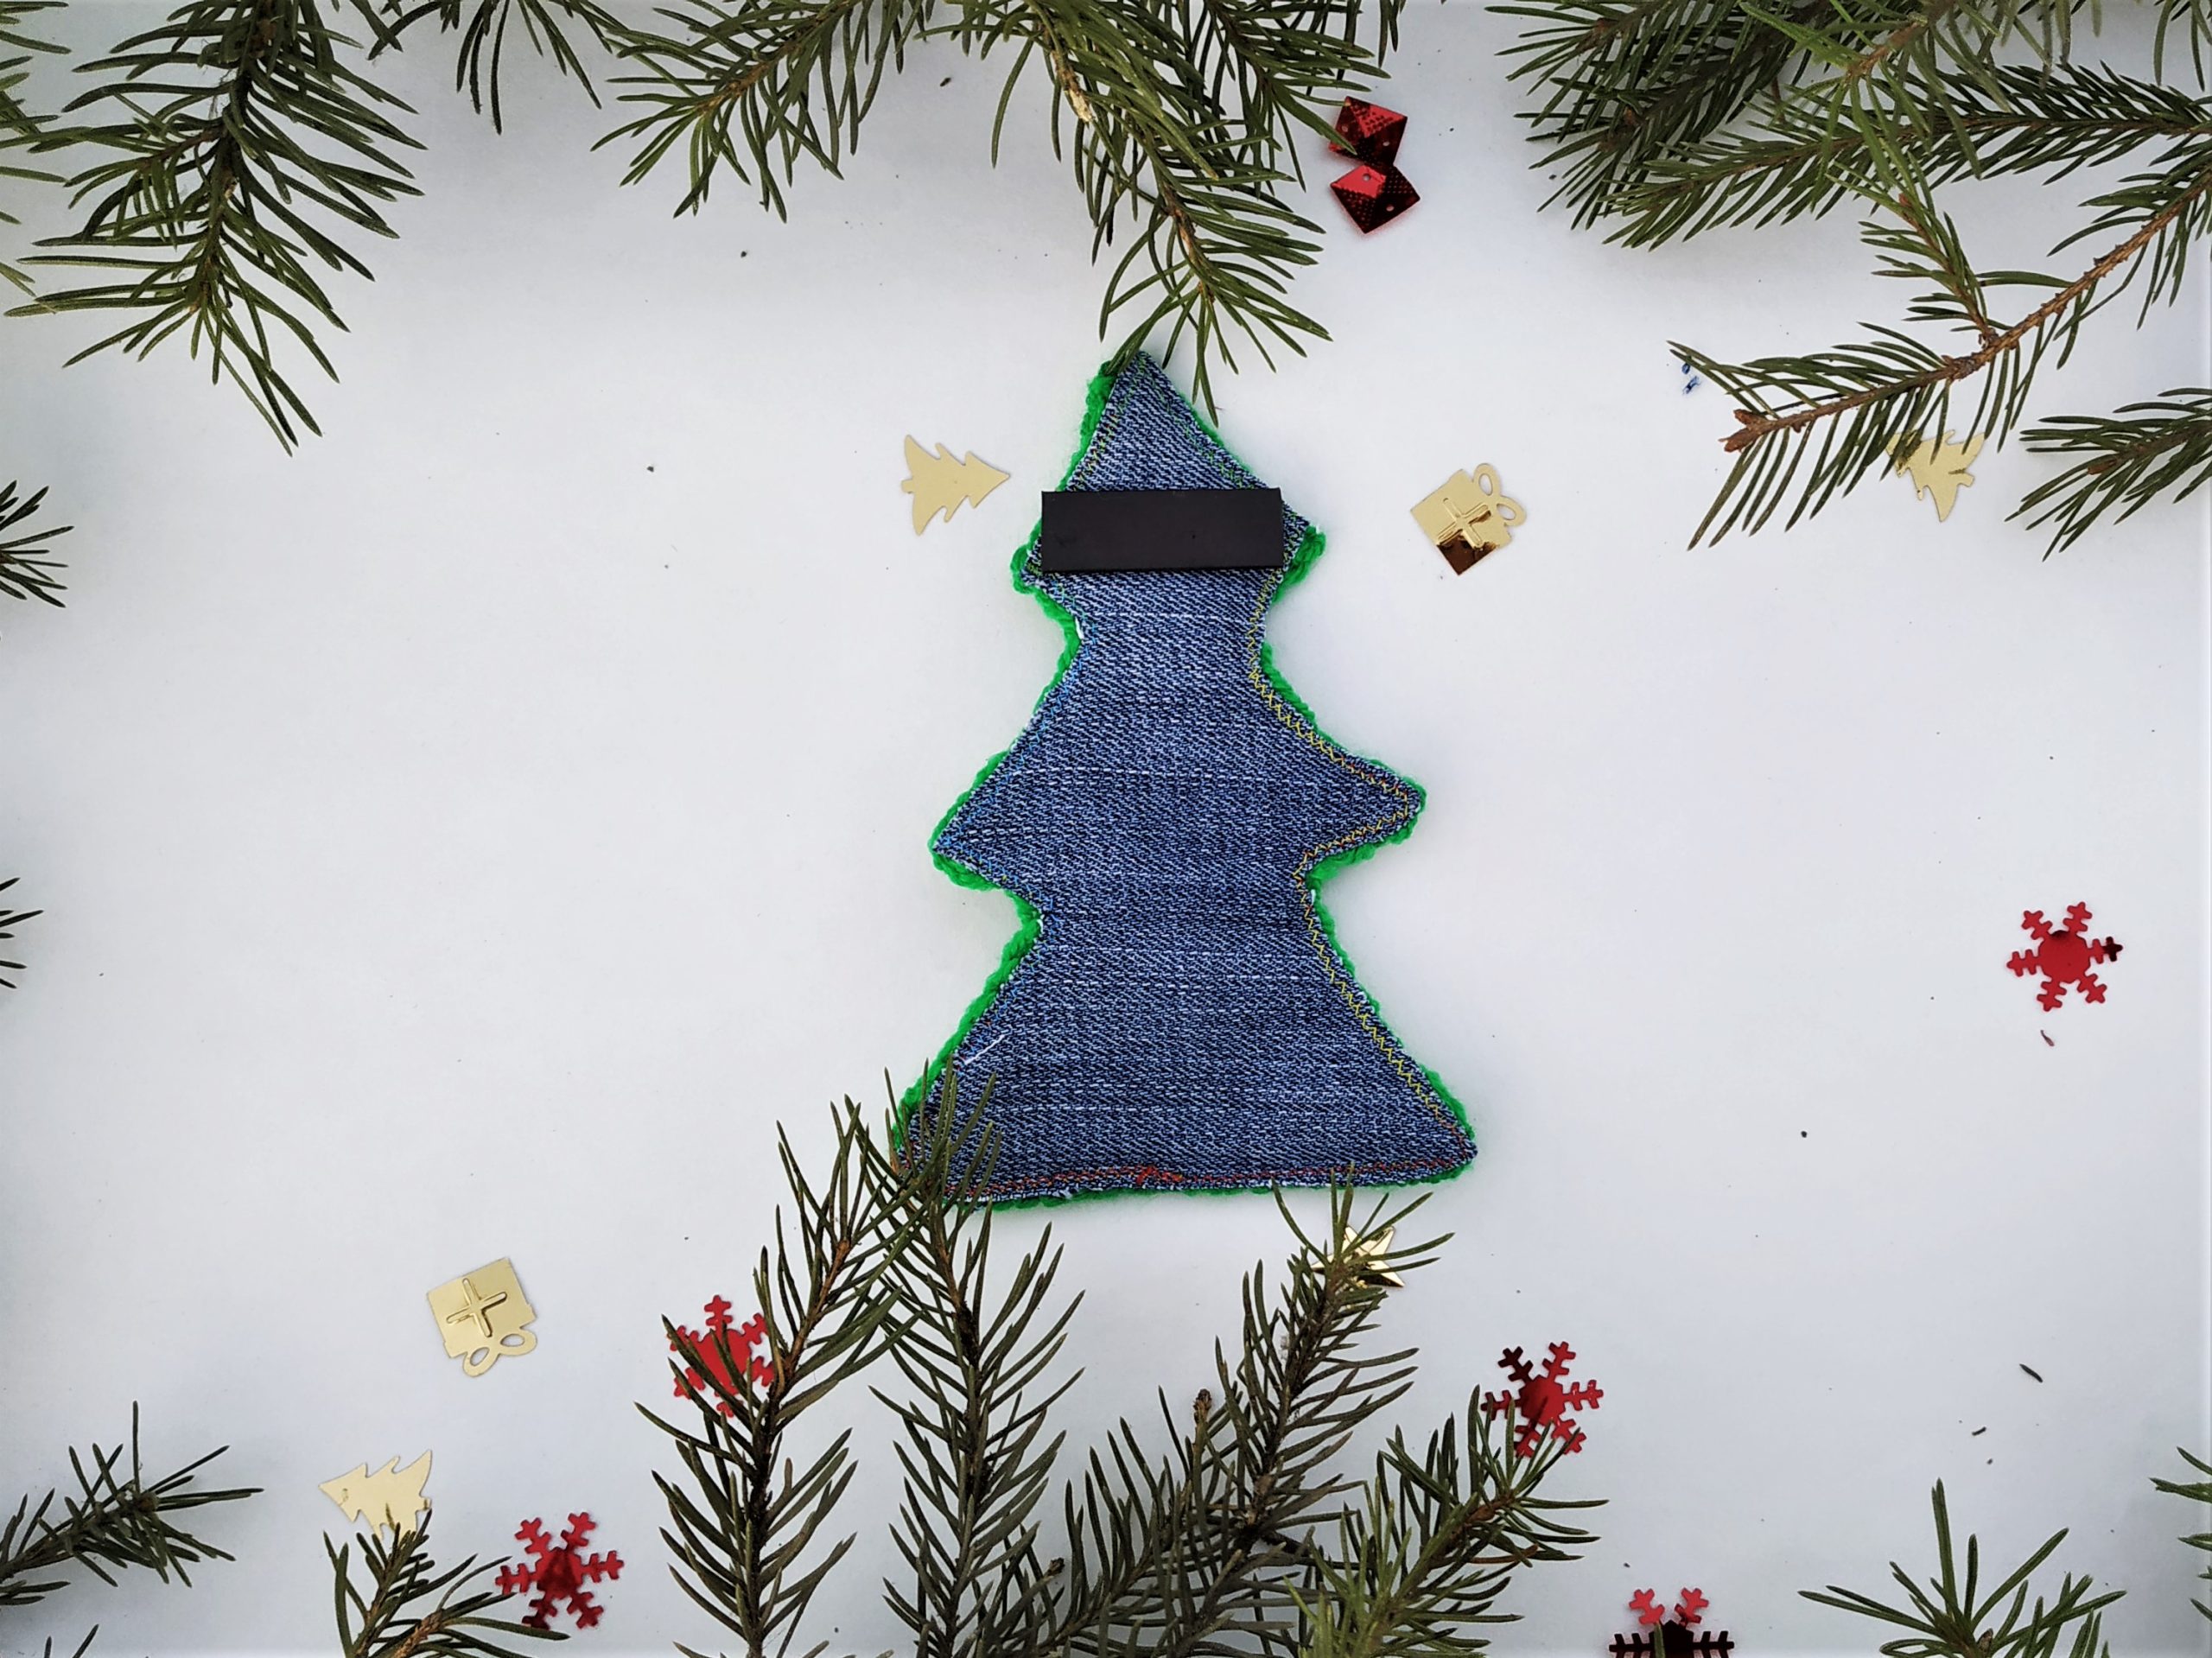 Mini Christmas tree knitting pattern, Christmas knitting patterns